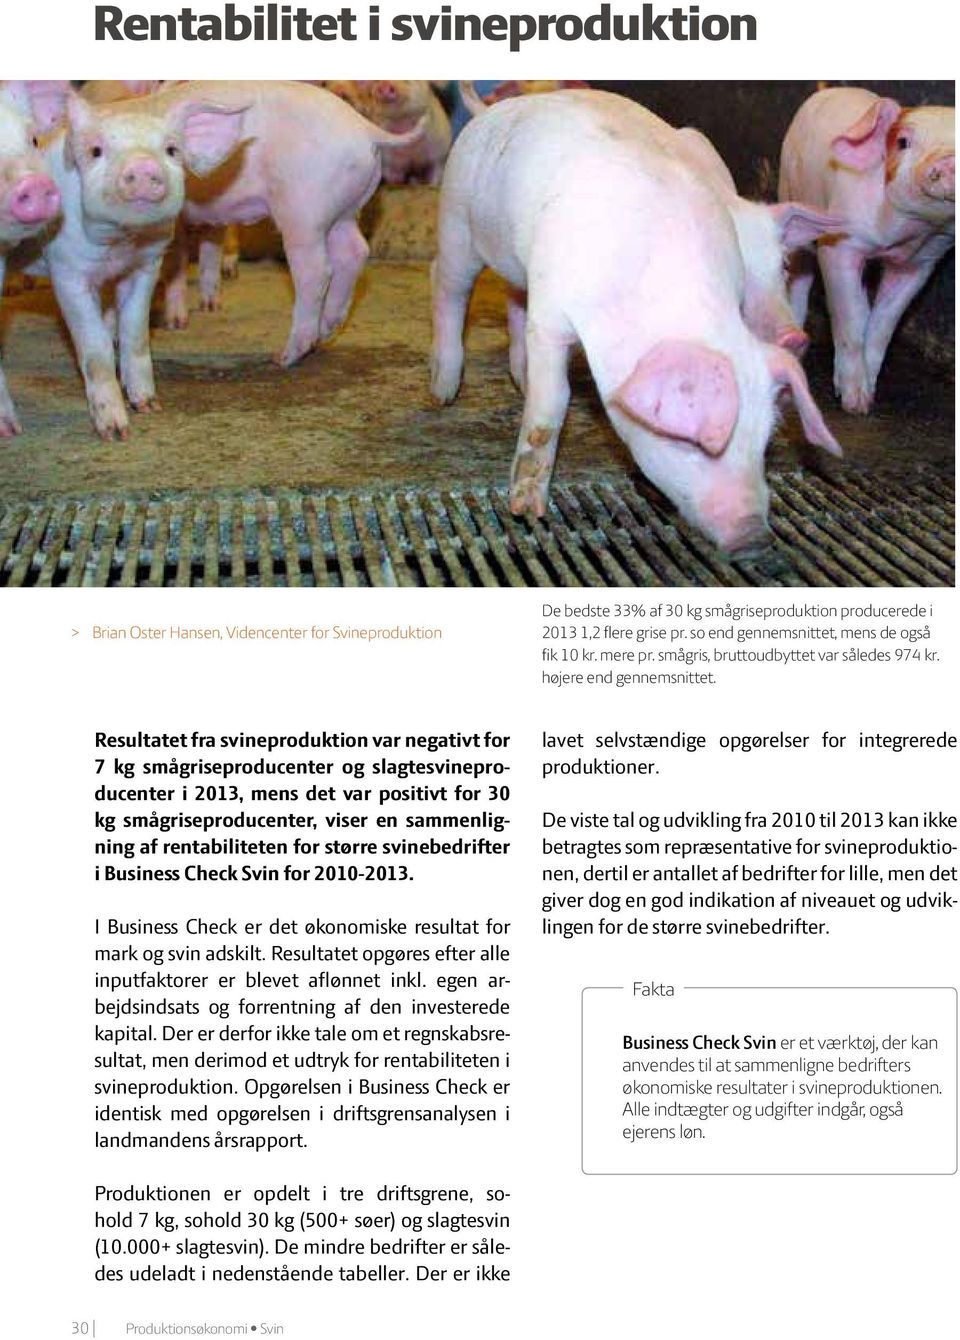 Resultatet fra svineproduktion var negativt for 7 kg smågriseproducenter og slagtesvineproducenter i 2013, mens det var positivt for 30 kg smågriseproducenter, viser en sammenligning af